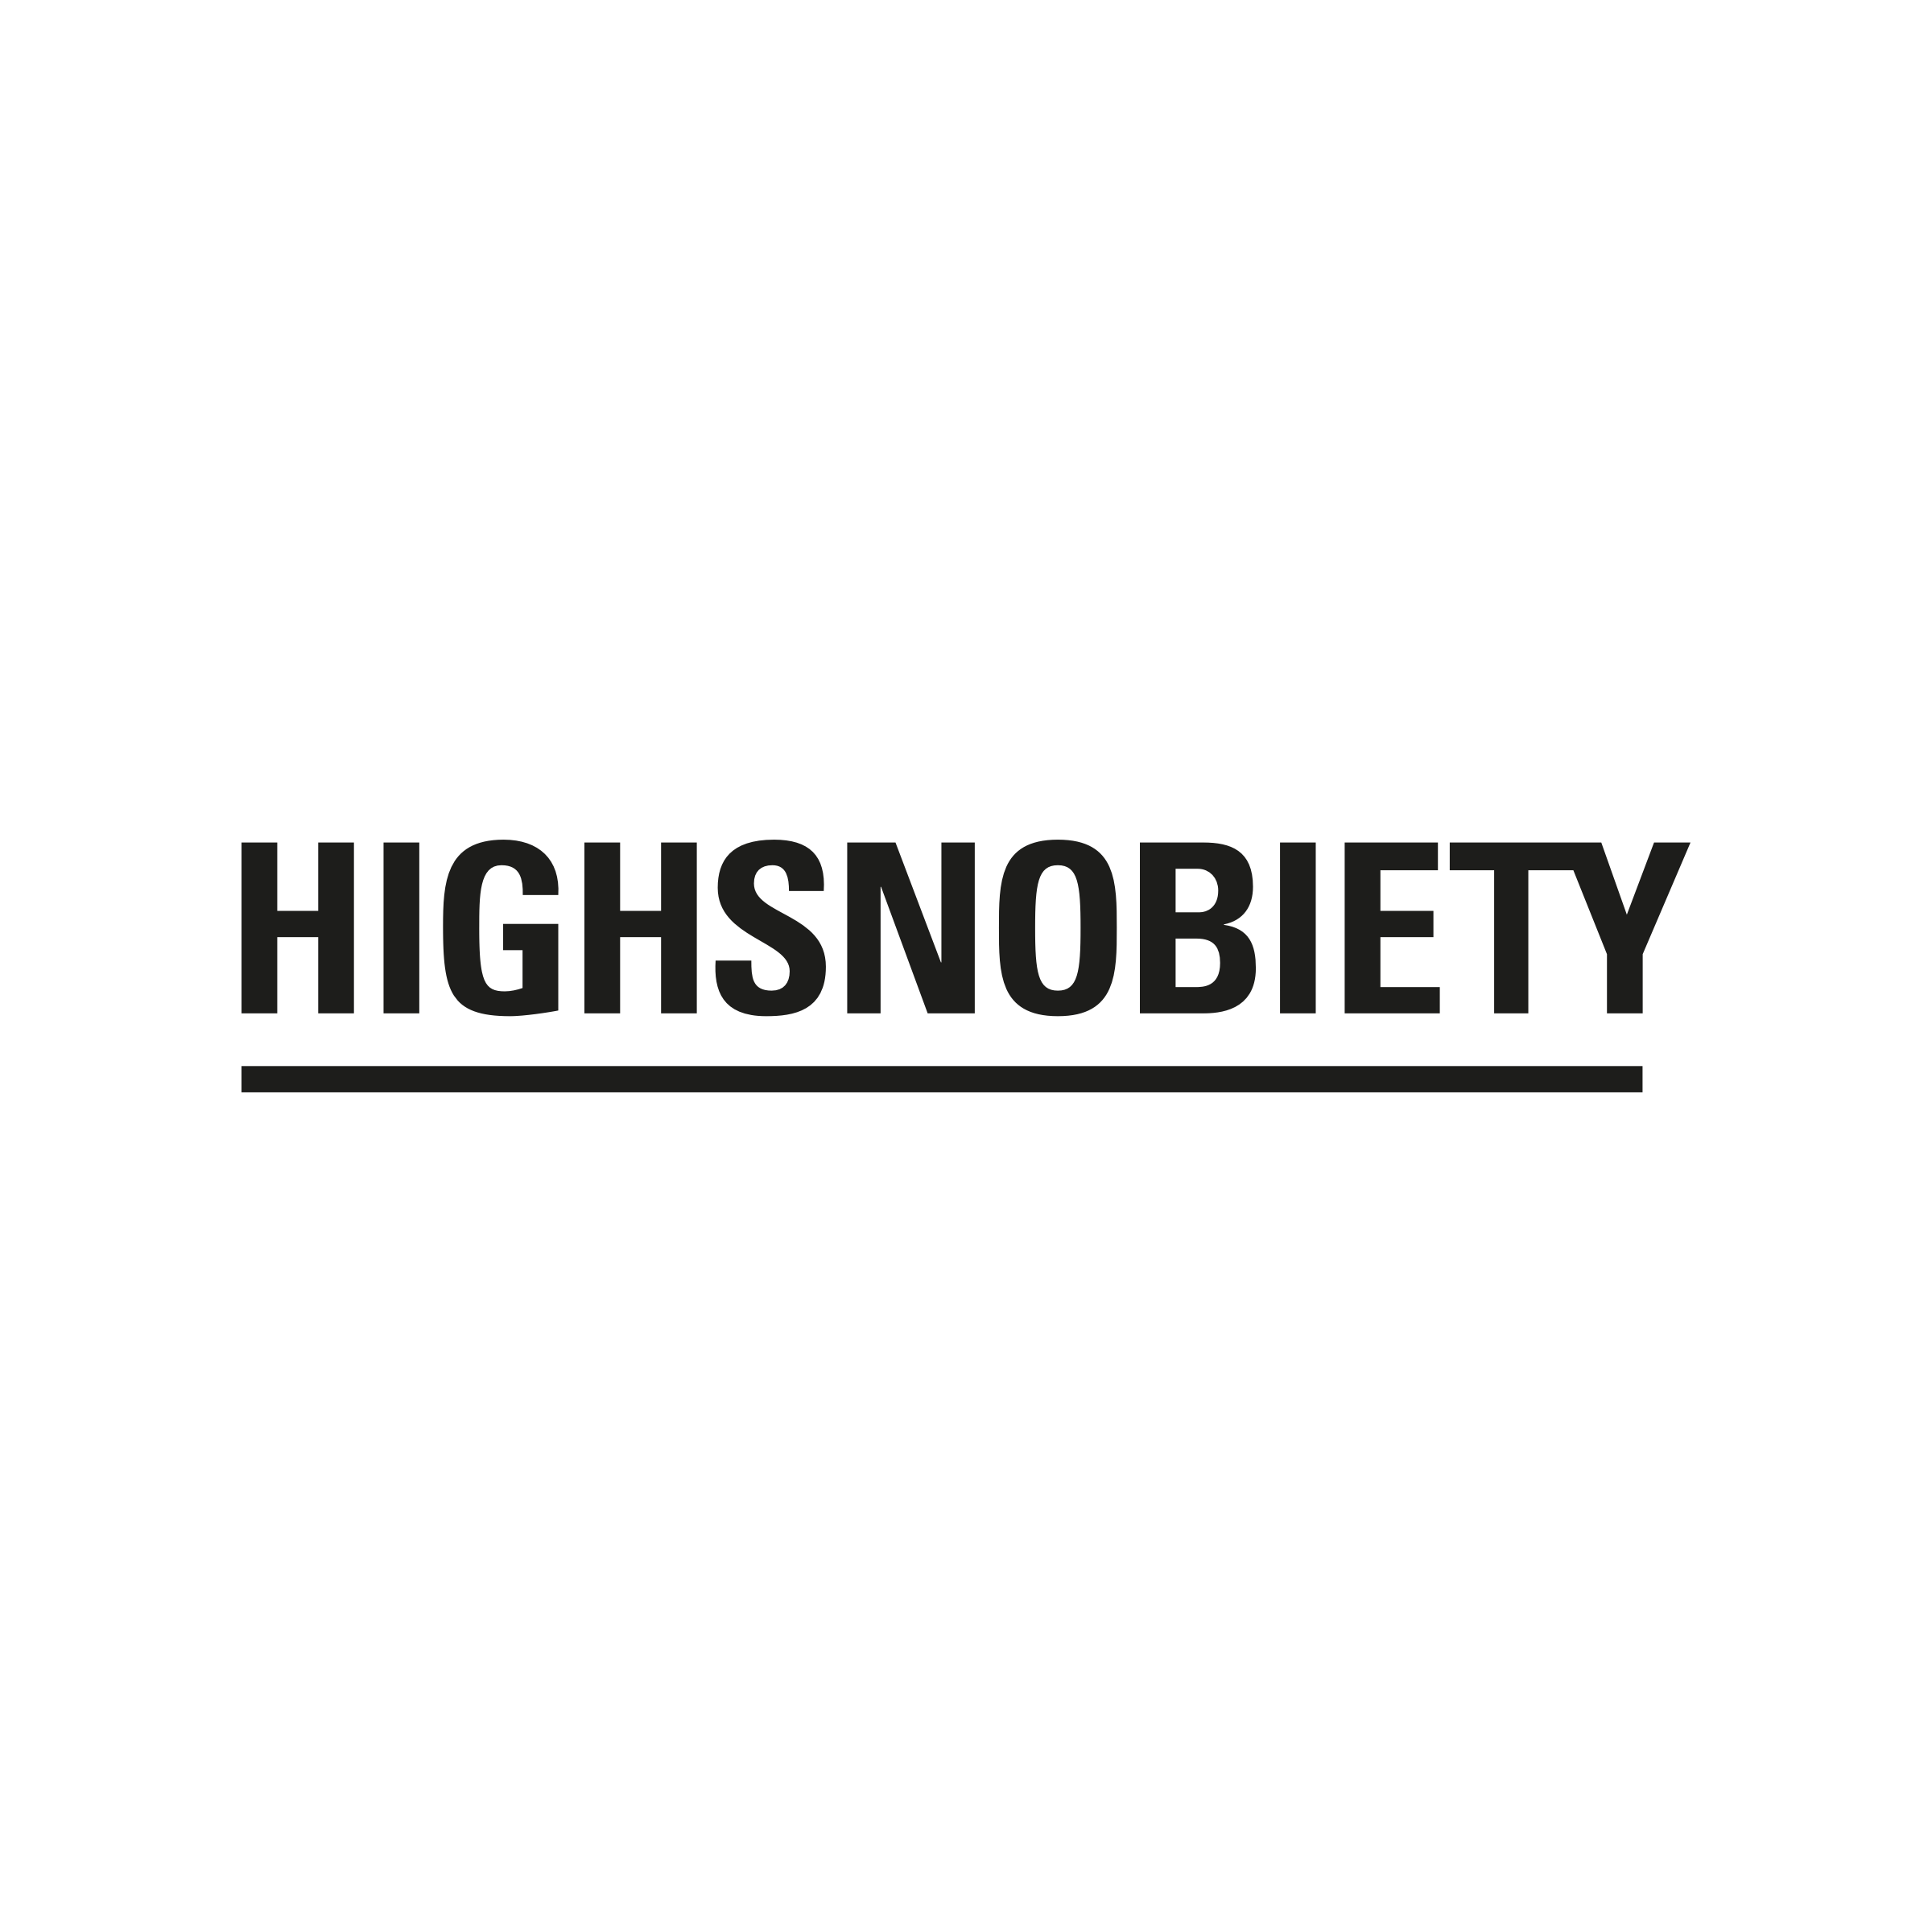 Highsnobiety_Logotype-800x800.png